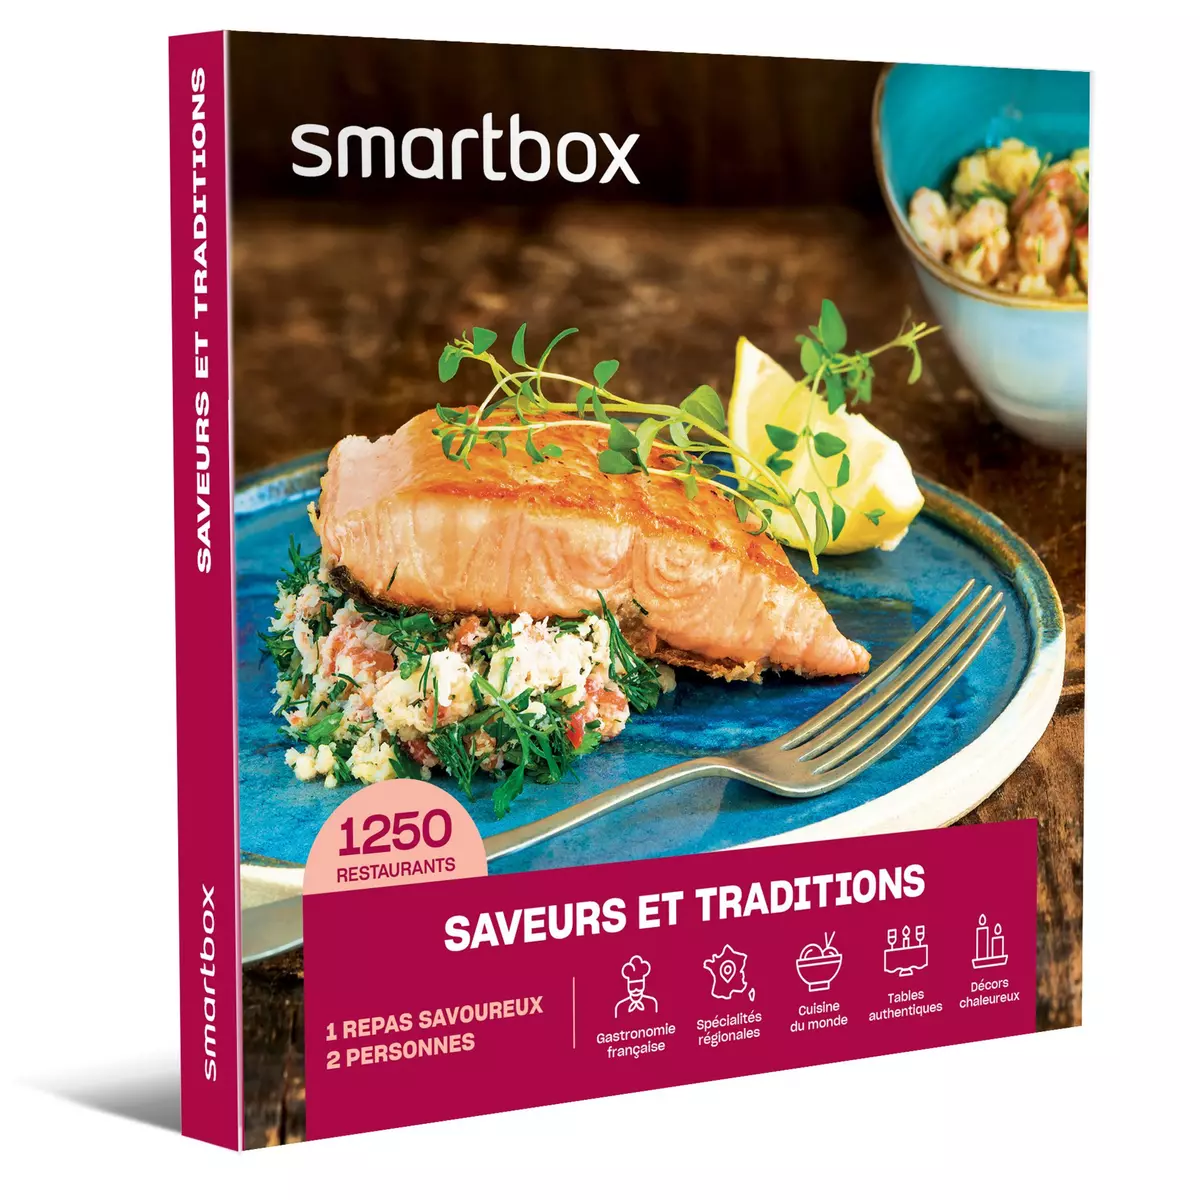 Smartbox Saveurs et traditions - Coffret Cadeau Gastronomie